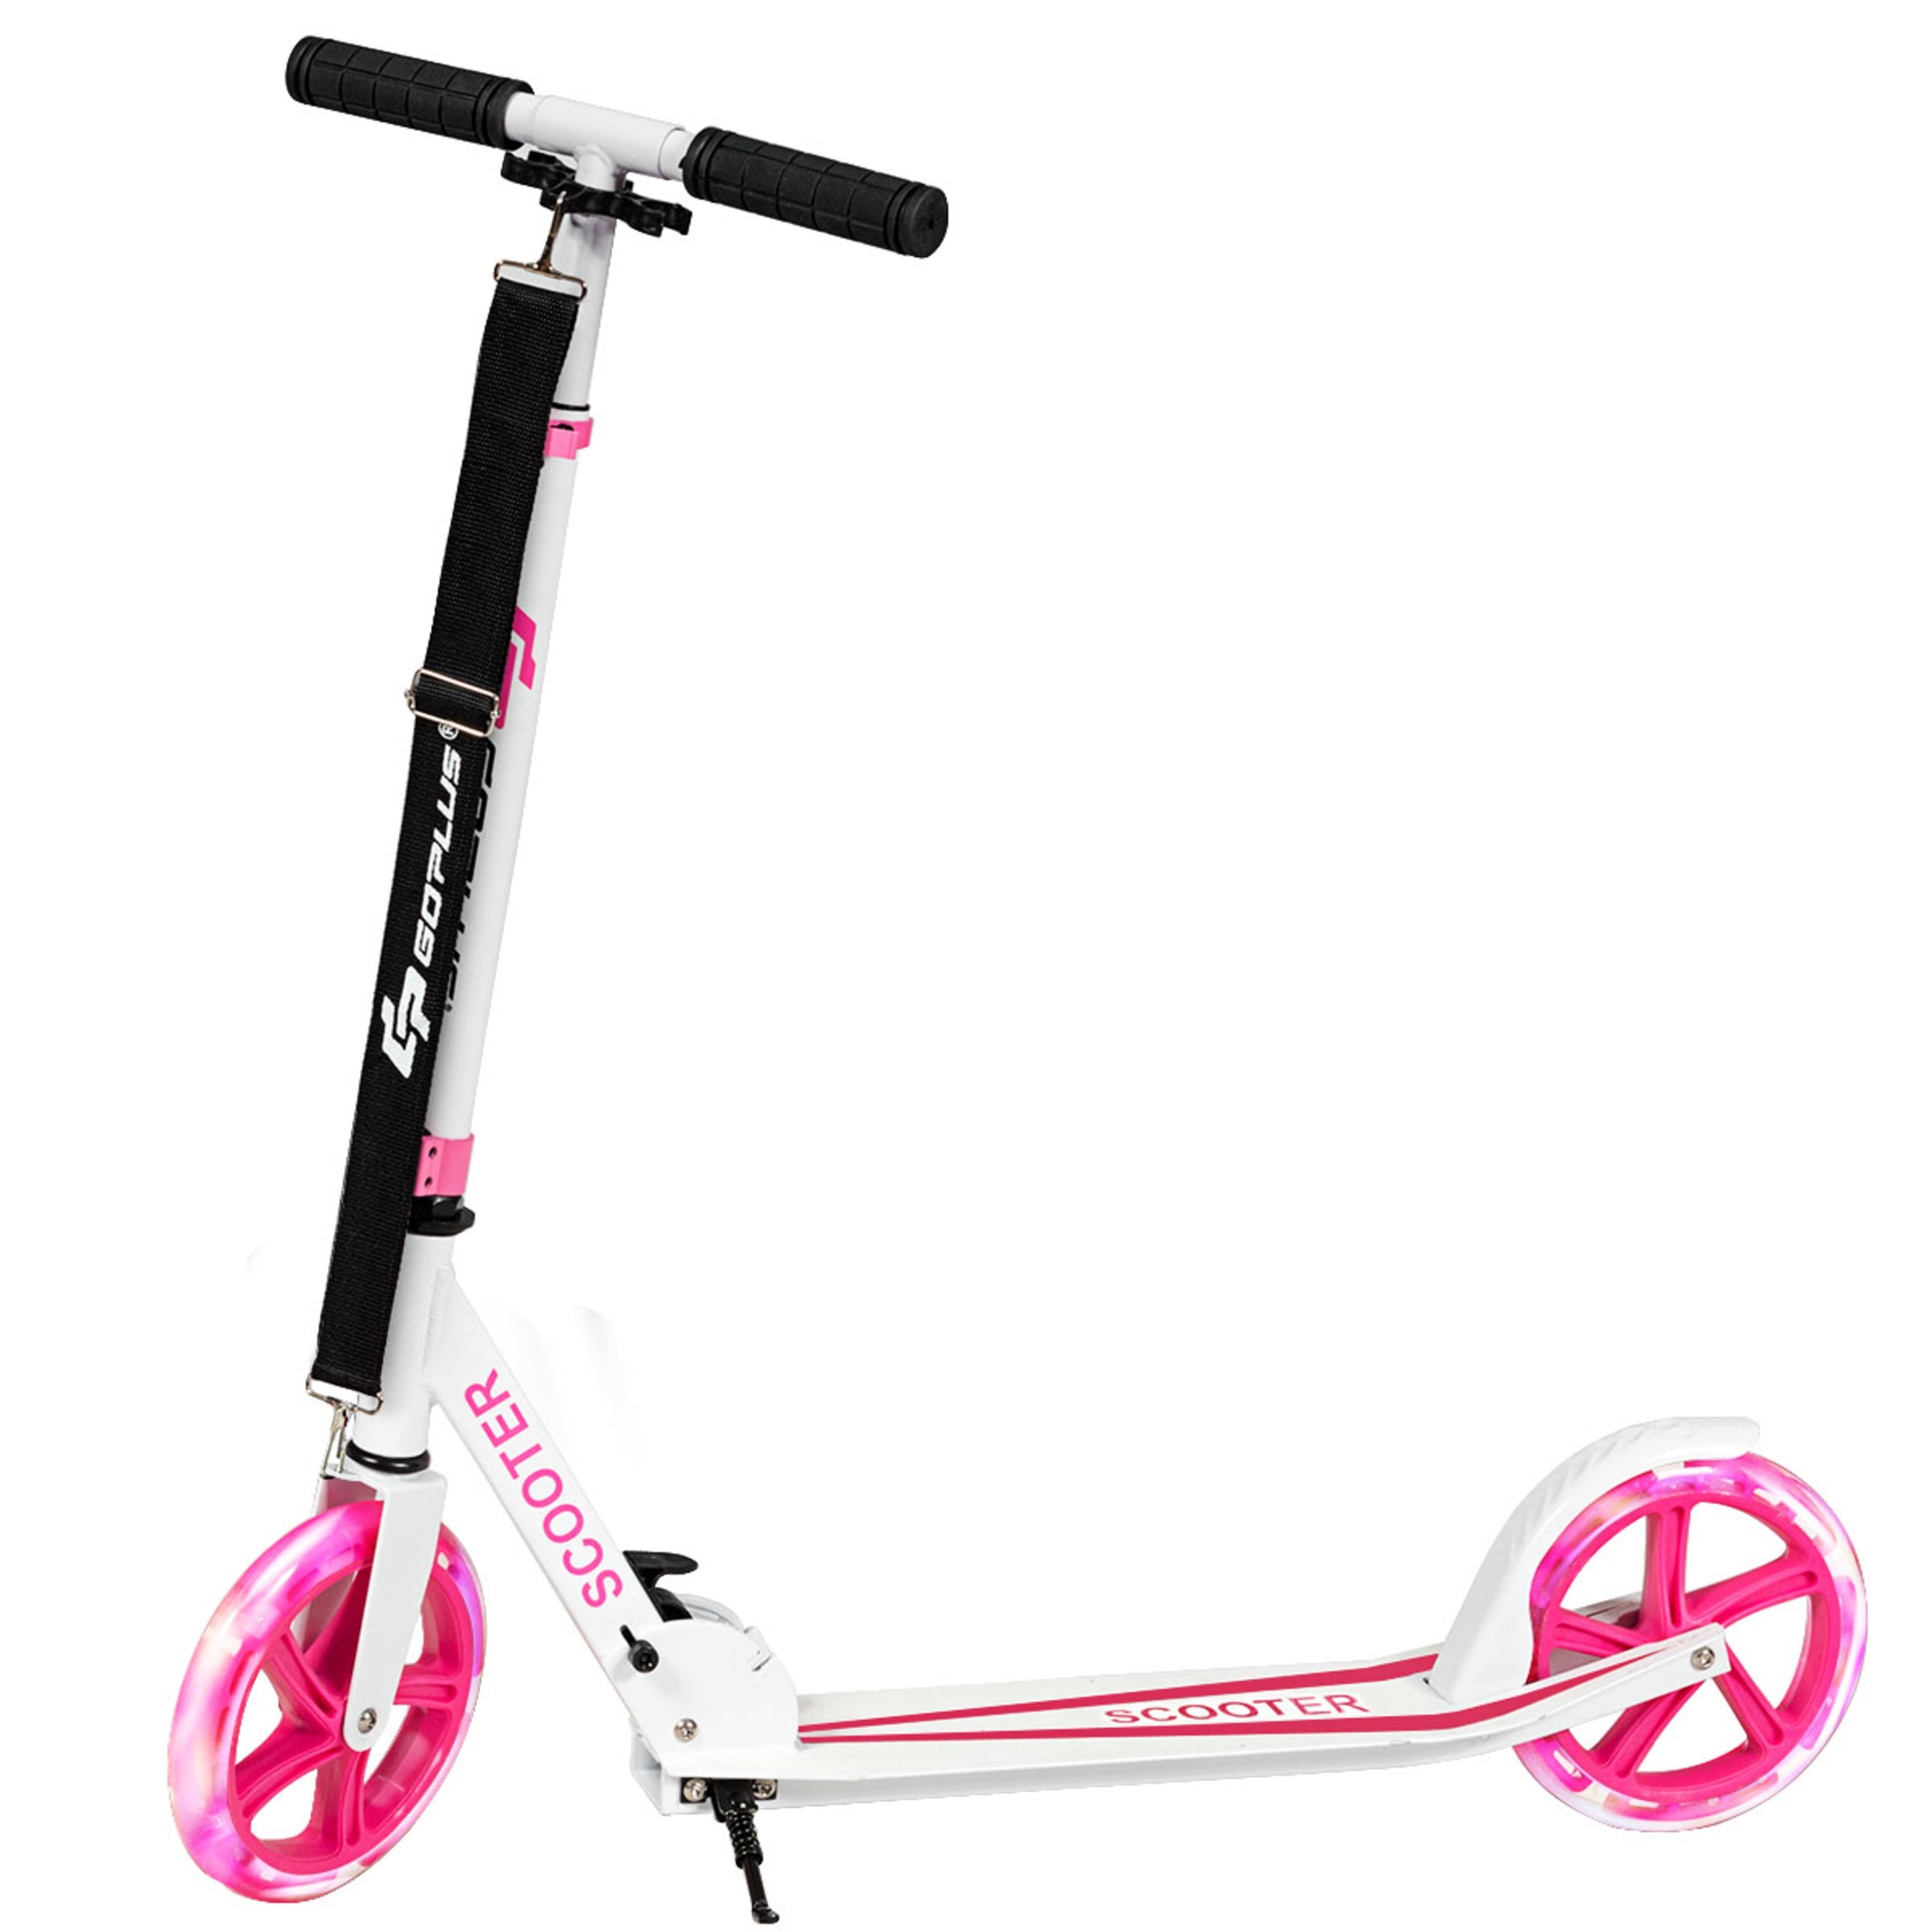 Scooter Plegable Altura Ajustable Carga Hasta 100kg  Con 2 Ruedas Luminosas Costway - blanco-rosa - 